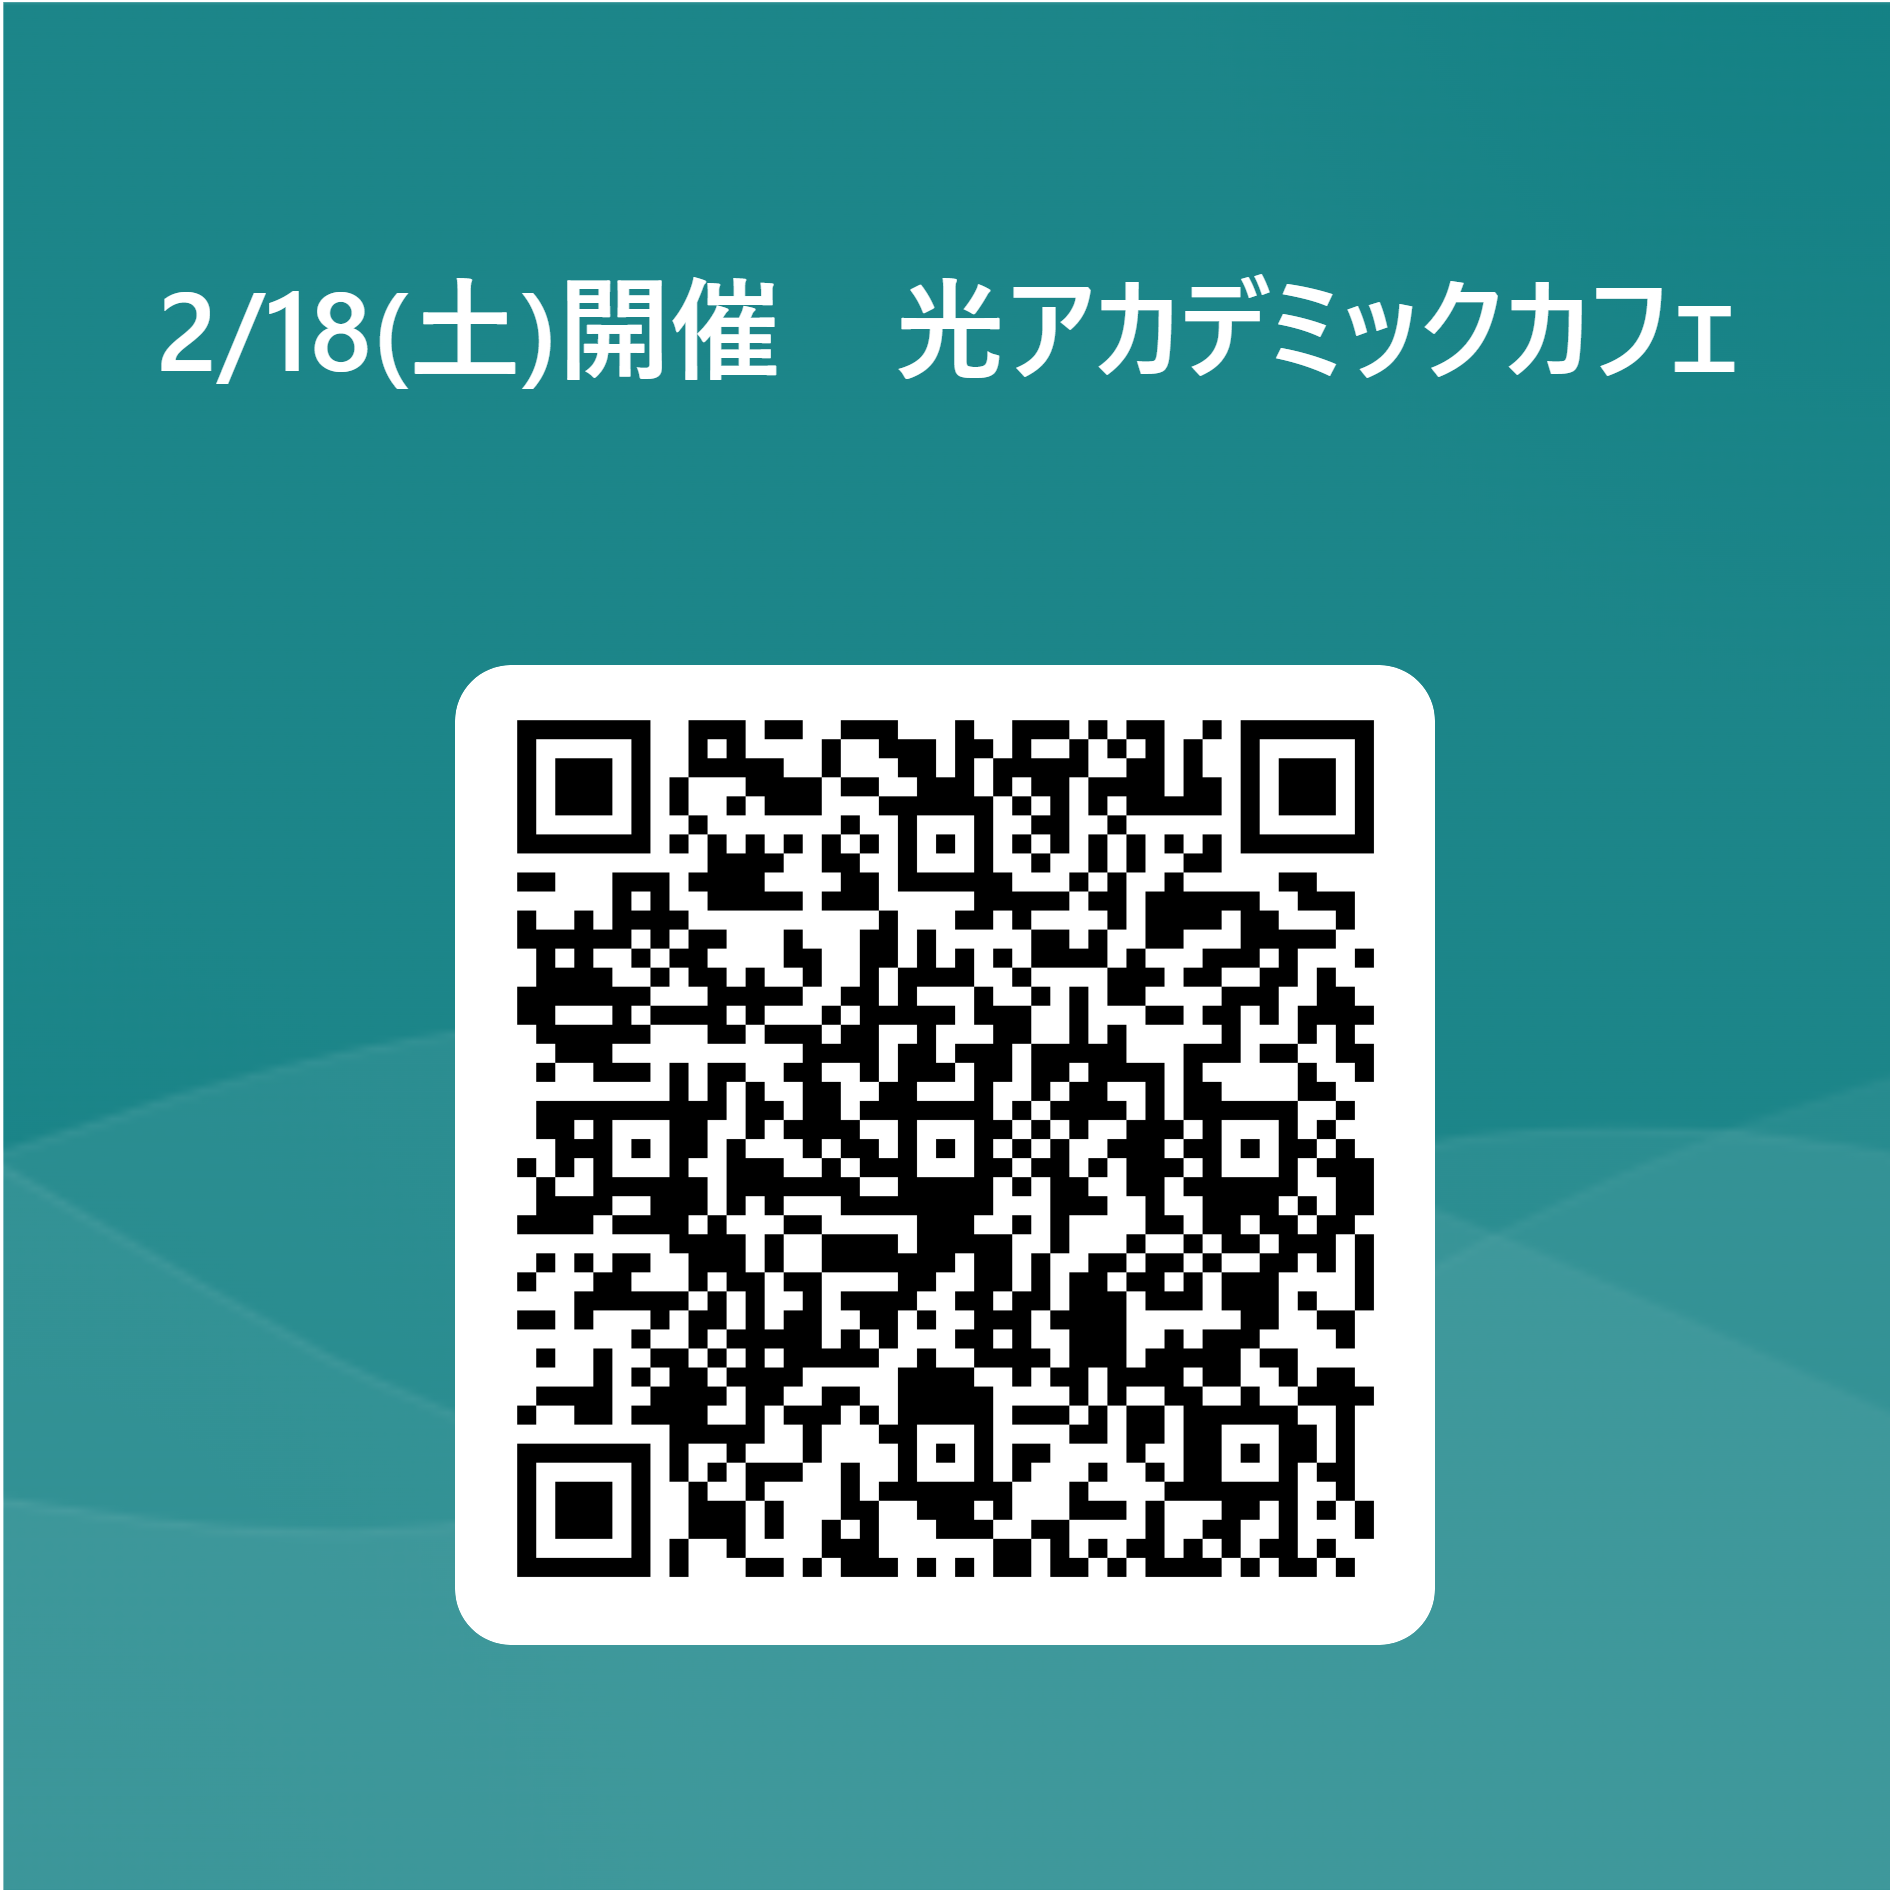 光アカデミックカフェ 用 QR コード.png